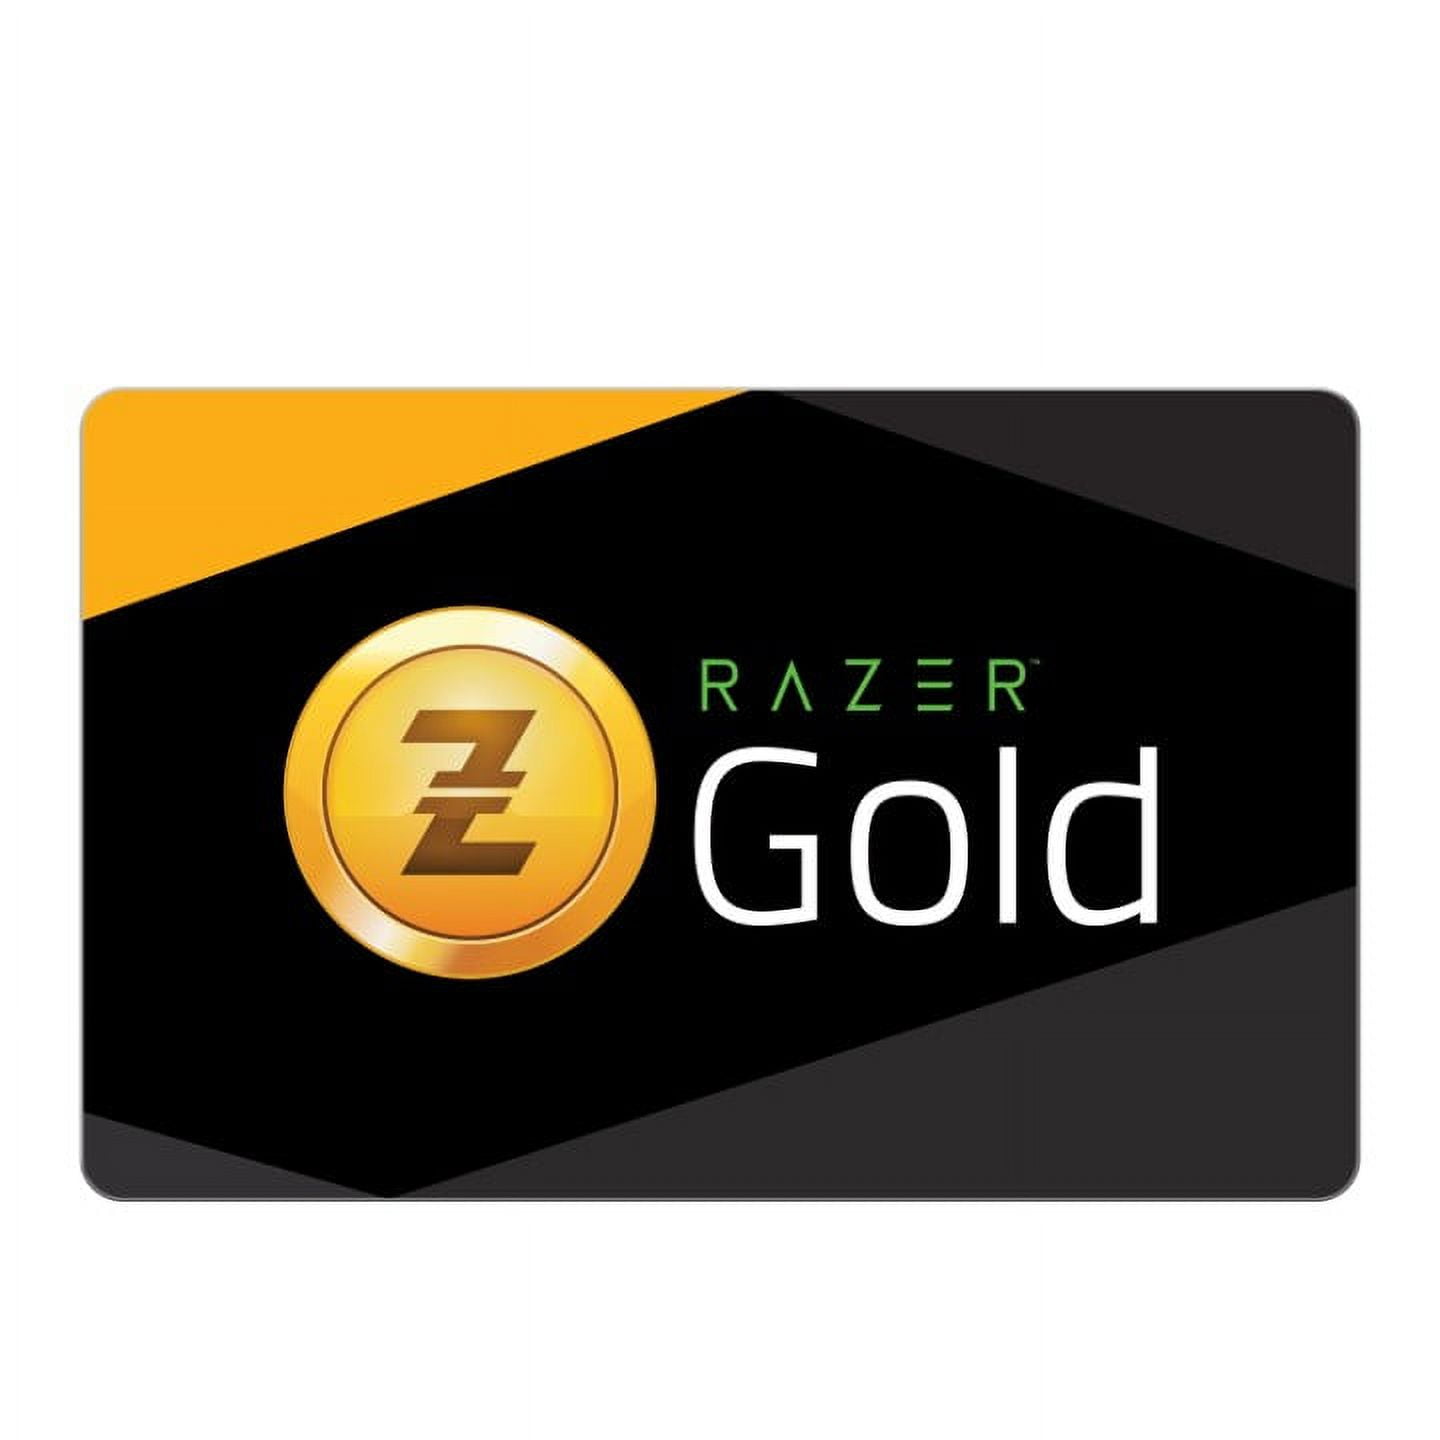 Buy Razer Gold 50 USD - Razer Key - GLOBAL - Cheap - !